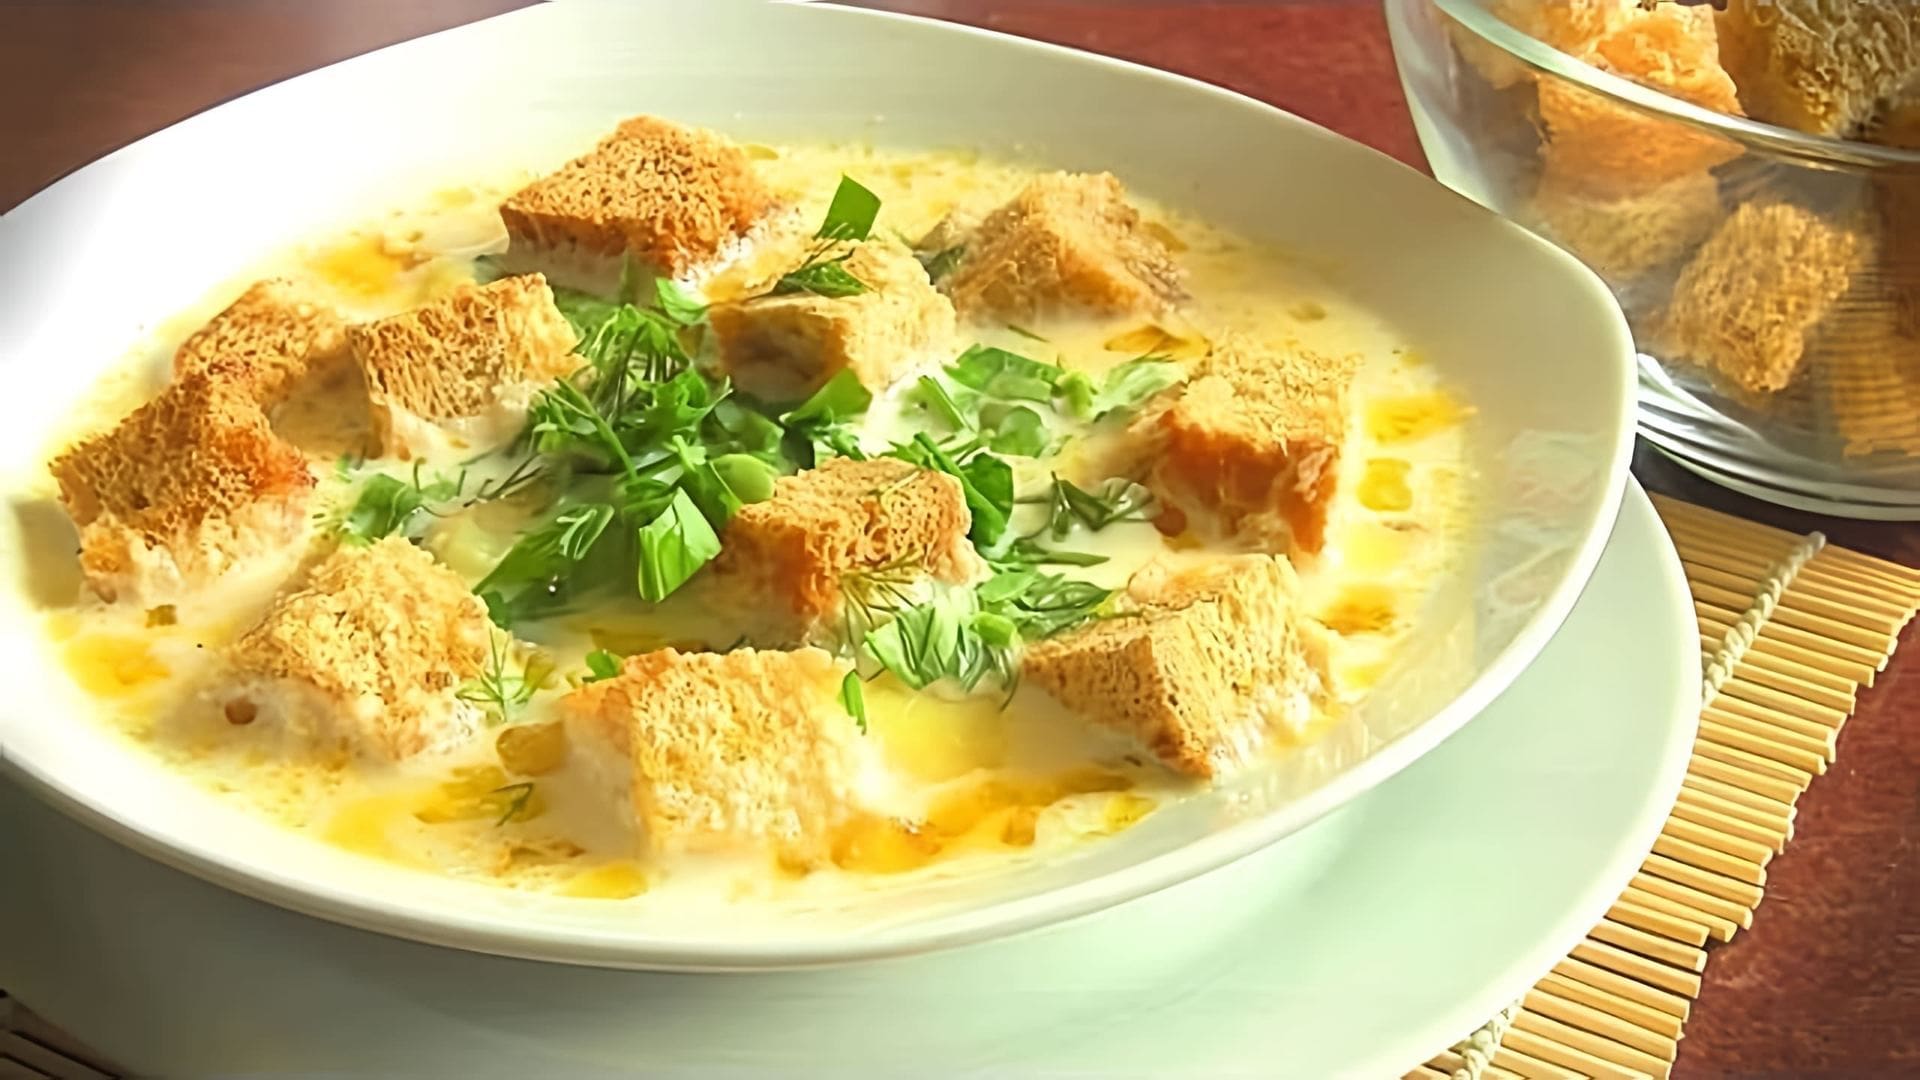 В этом видео демонстрируется рецепт сырного супа, который можно приготовить быстро и вкусно